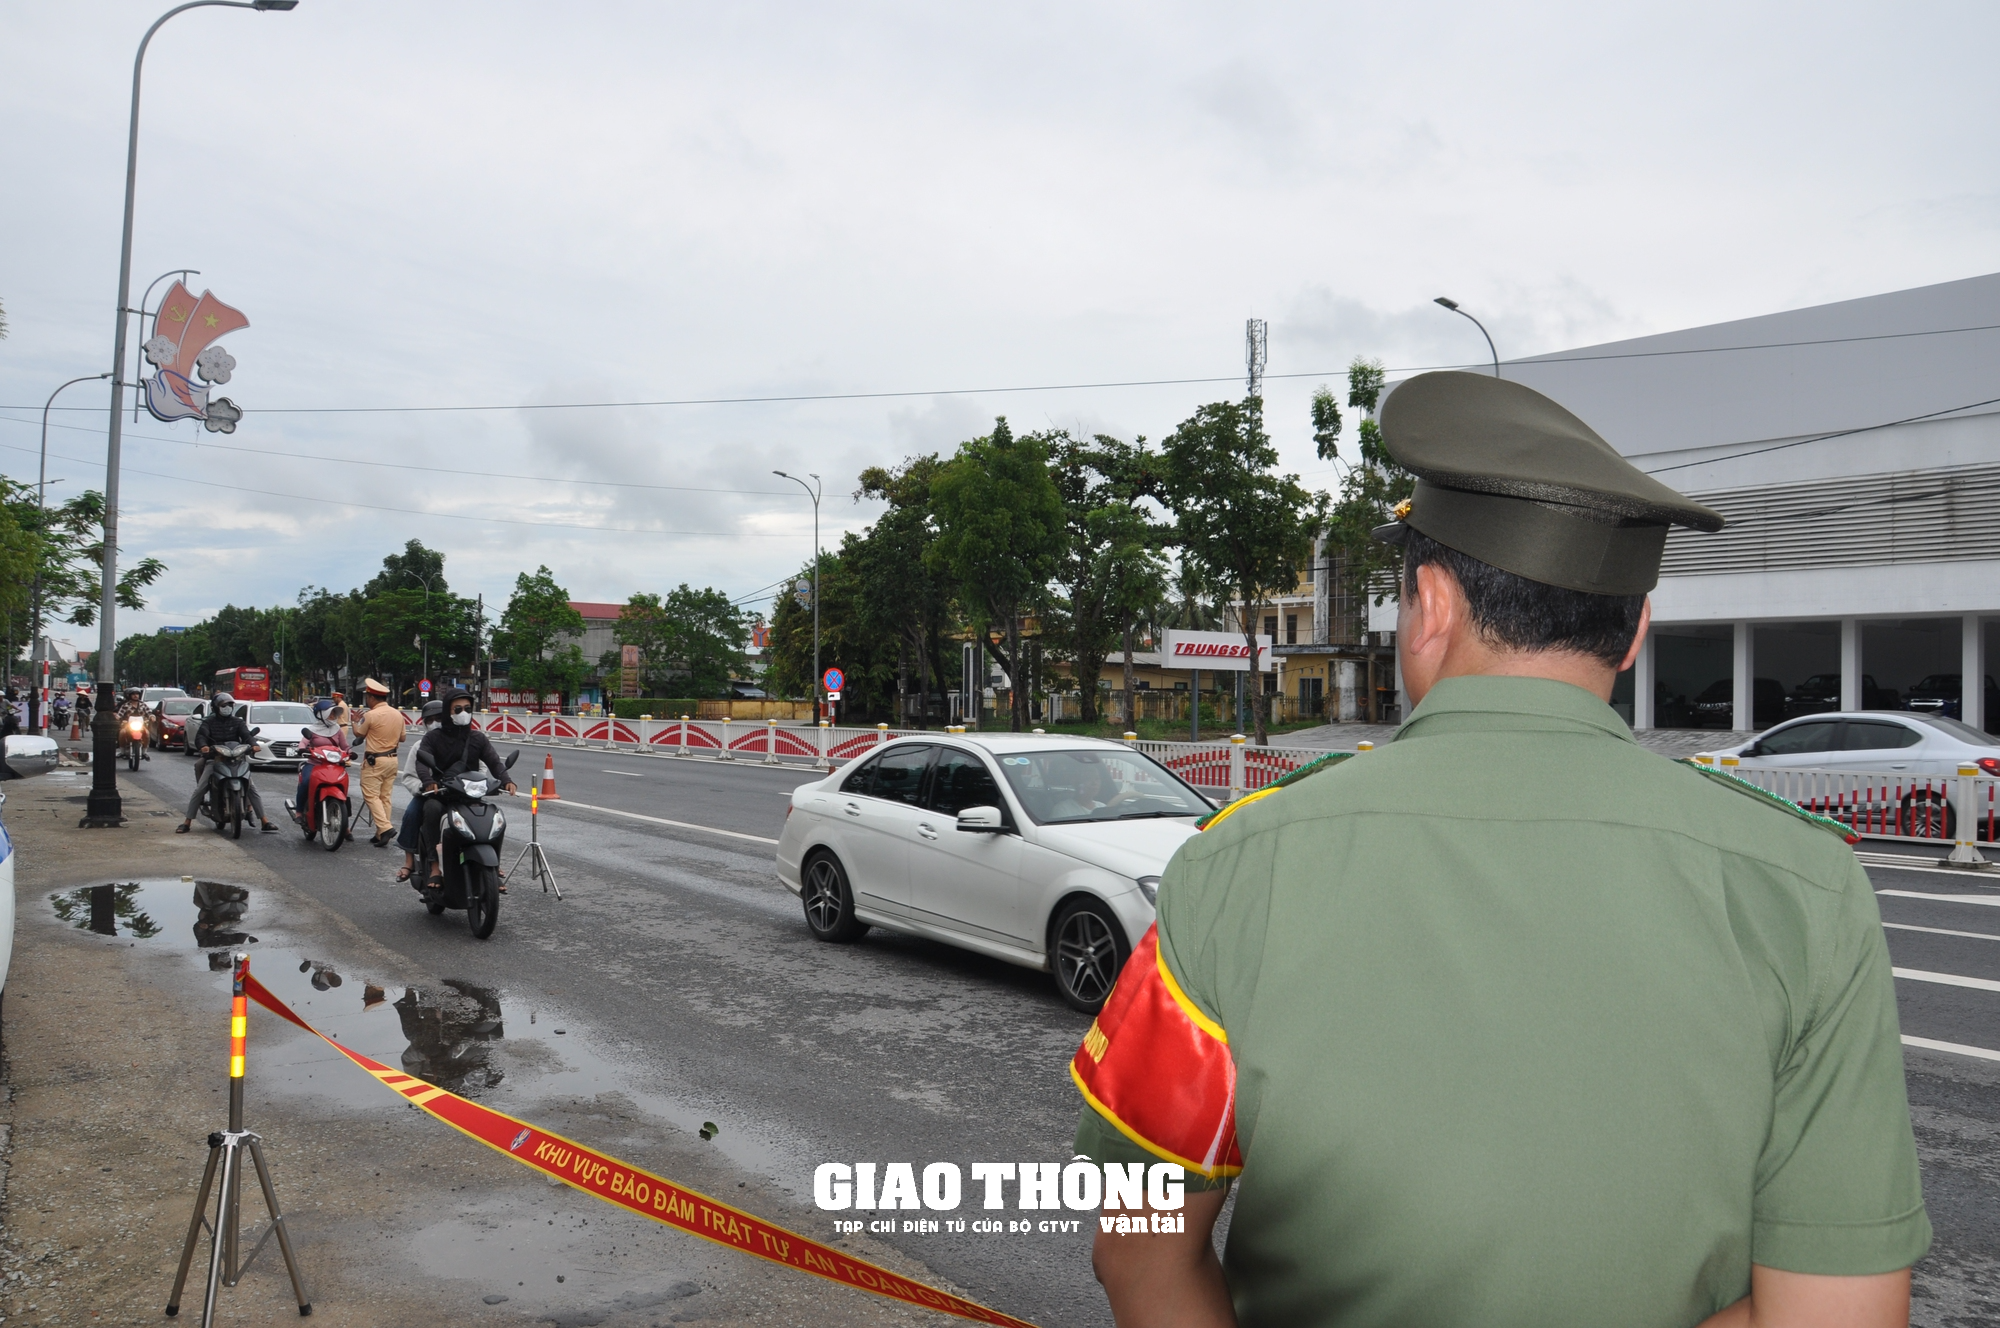 Dàn trận xử lý nồng độ cồn trên QL1 ở tỉnh Thừa Thiên-Huế: Loạt người vi phạm sau bữa ăn trưa - Ảnh 10.